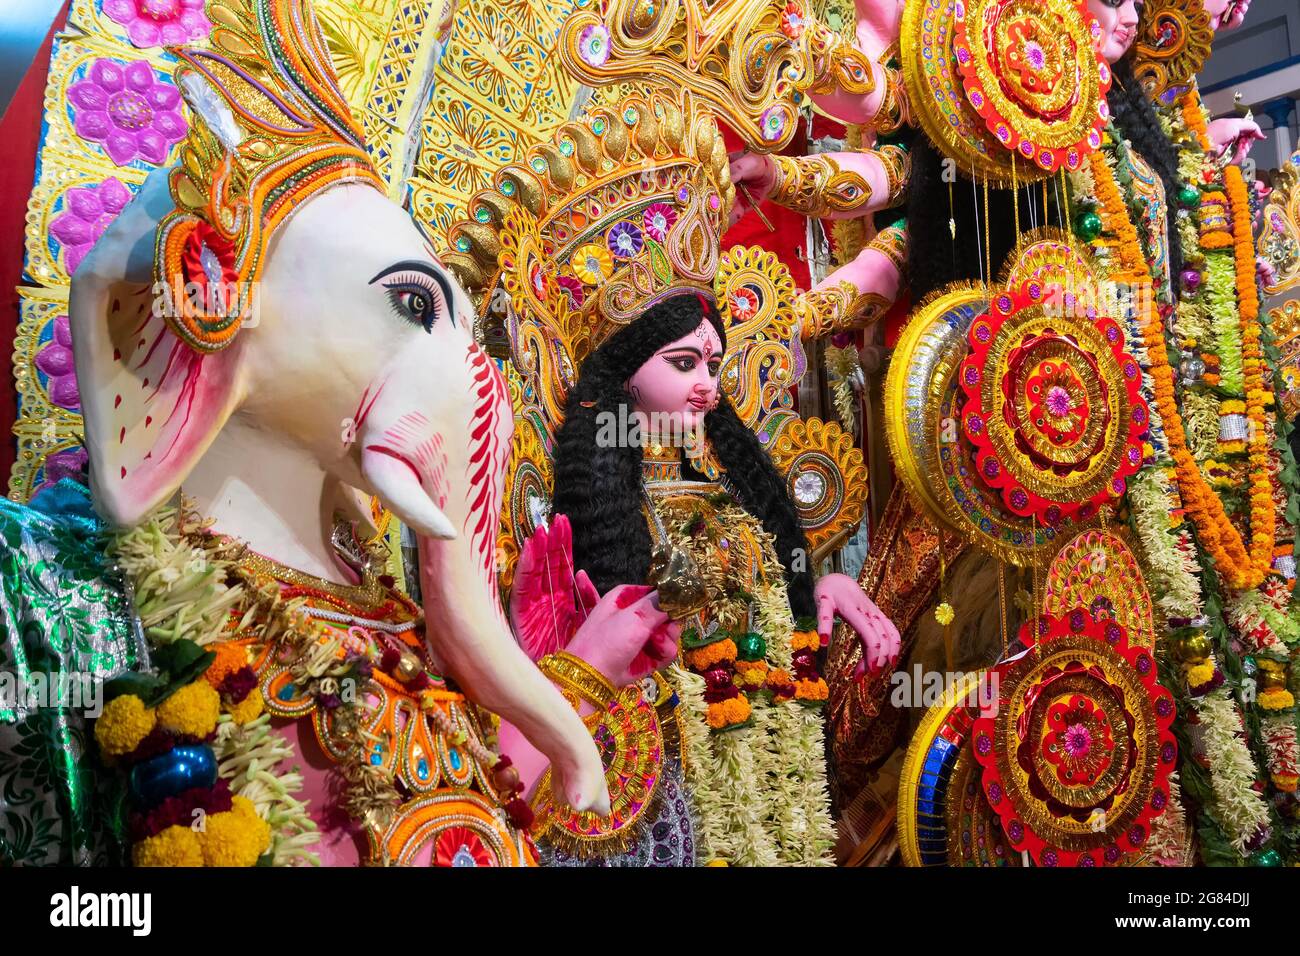 Kolkata, Indien - 17. Oktober 2018 : dekoriertes Idol von herrn Ganesha neben Göttin Durga, Sohn neben Mutter, während Durga Puja angebetet. Große Stockfoto